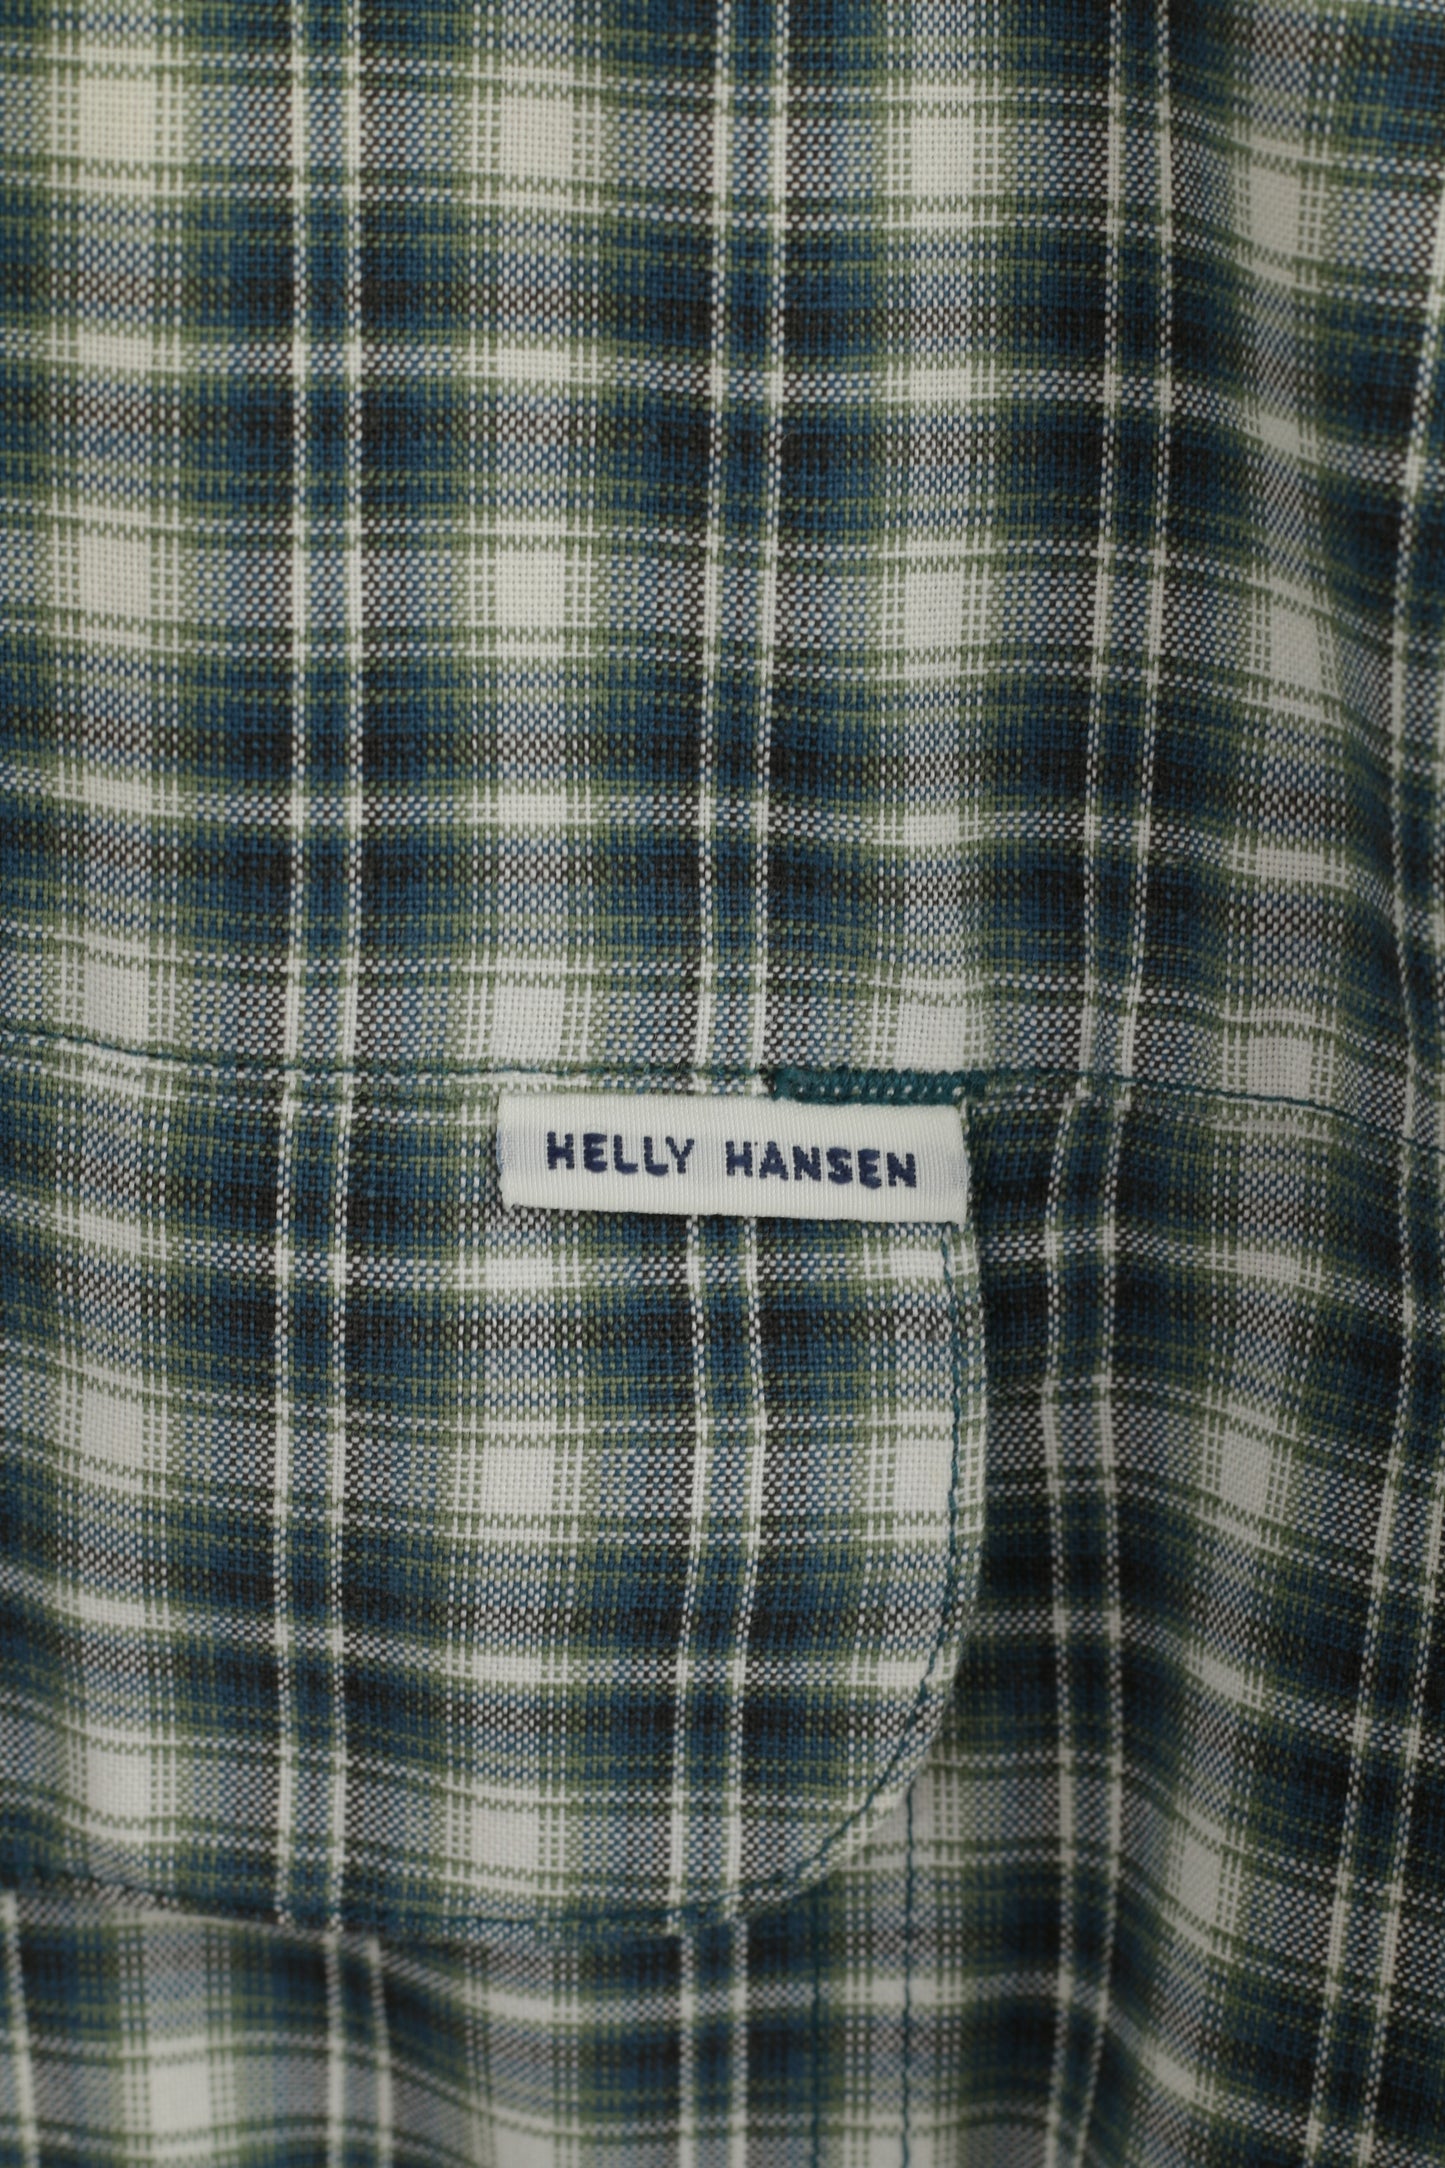 Helly Hansen Uomo M (L) Camicia casual Top da esterno in cotone a maniche corte a quadri verdi